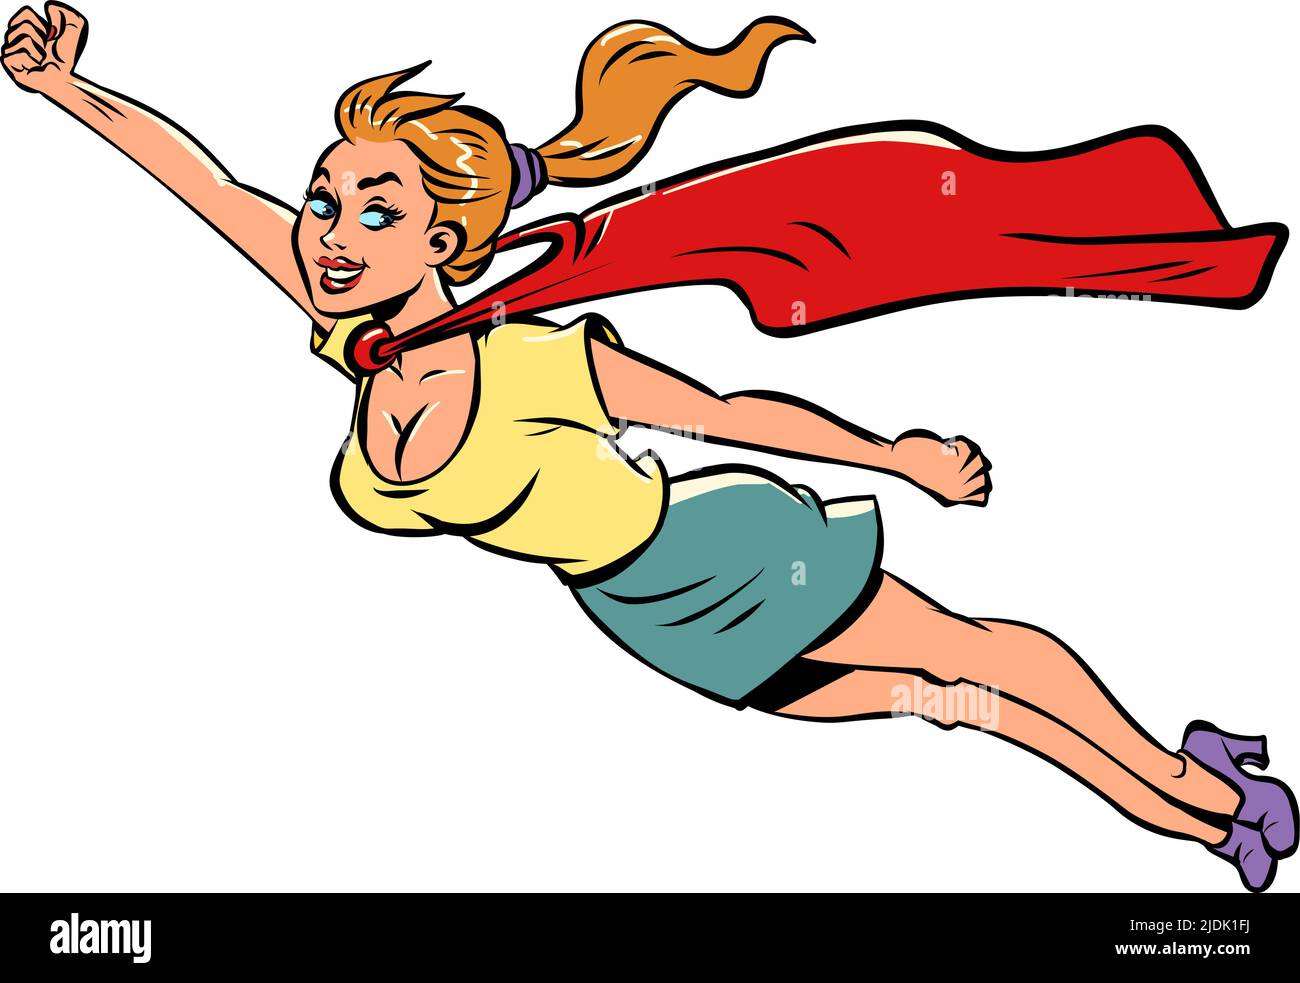 femme super-héros, fille dans le cape rouge volant, aide, féminisme puissance féminine Illustration de Vecteur